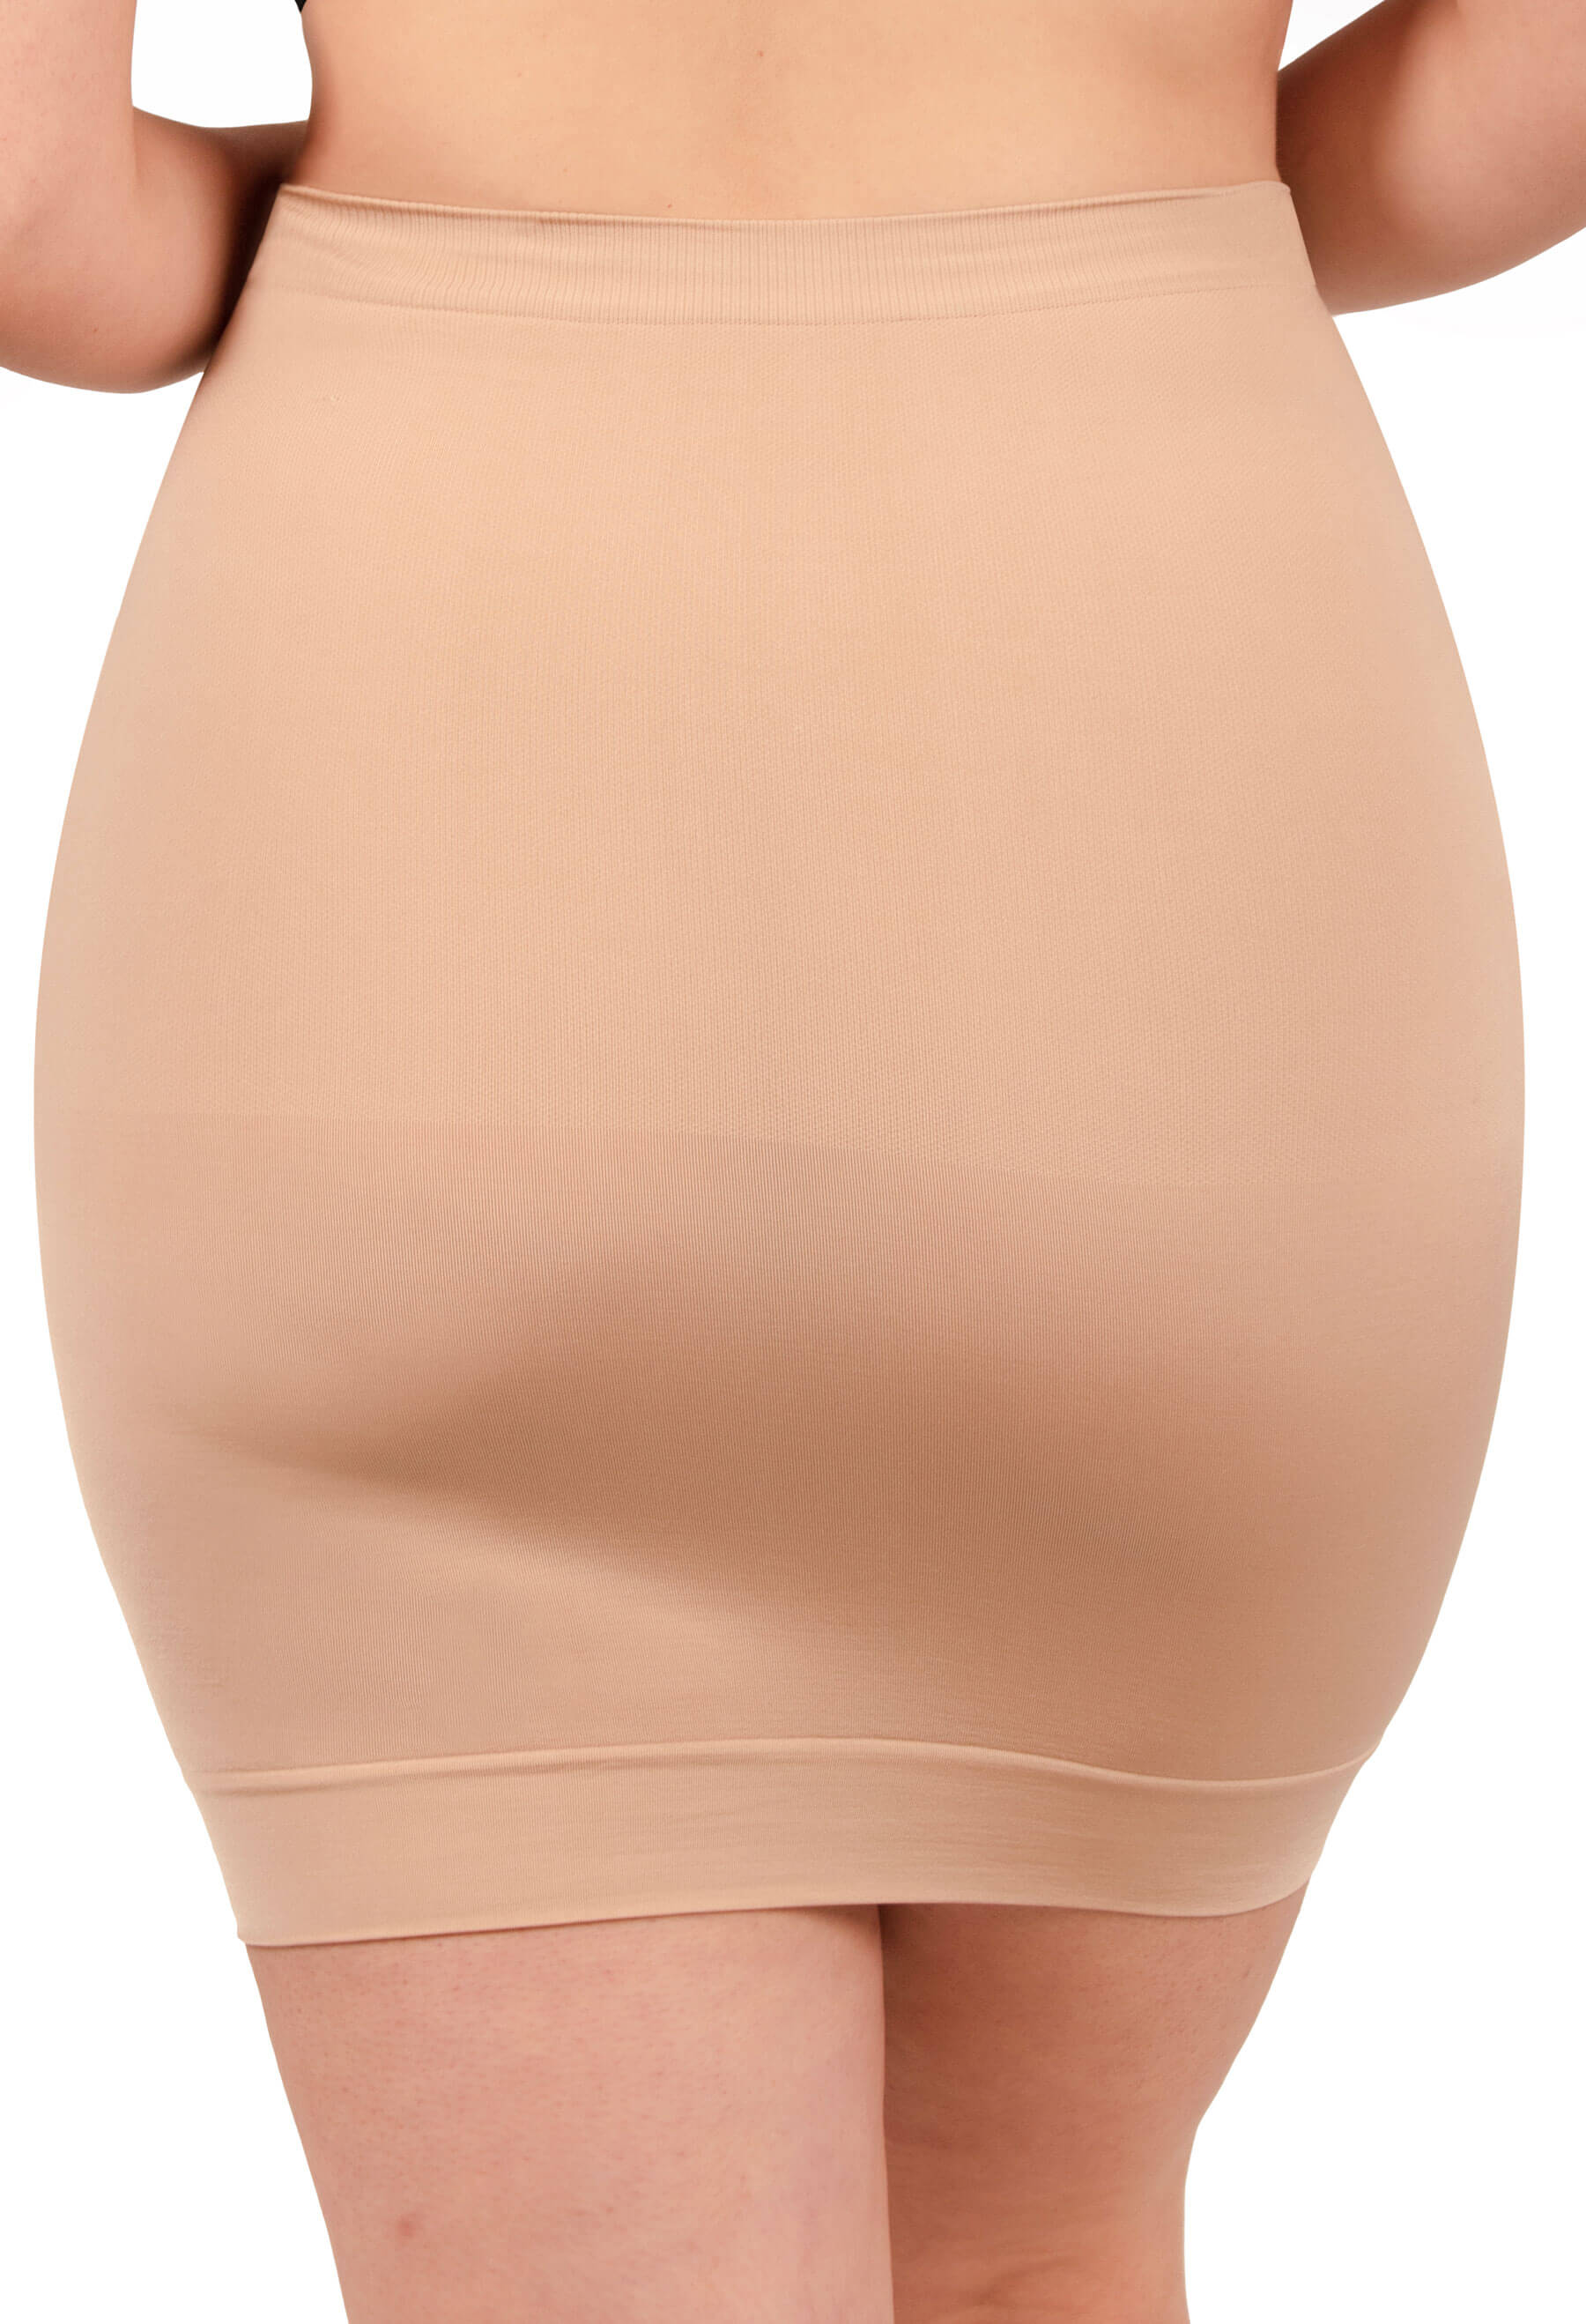 Half Slip Shaping Skirt - 2 PACK